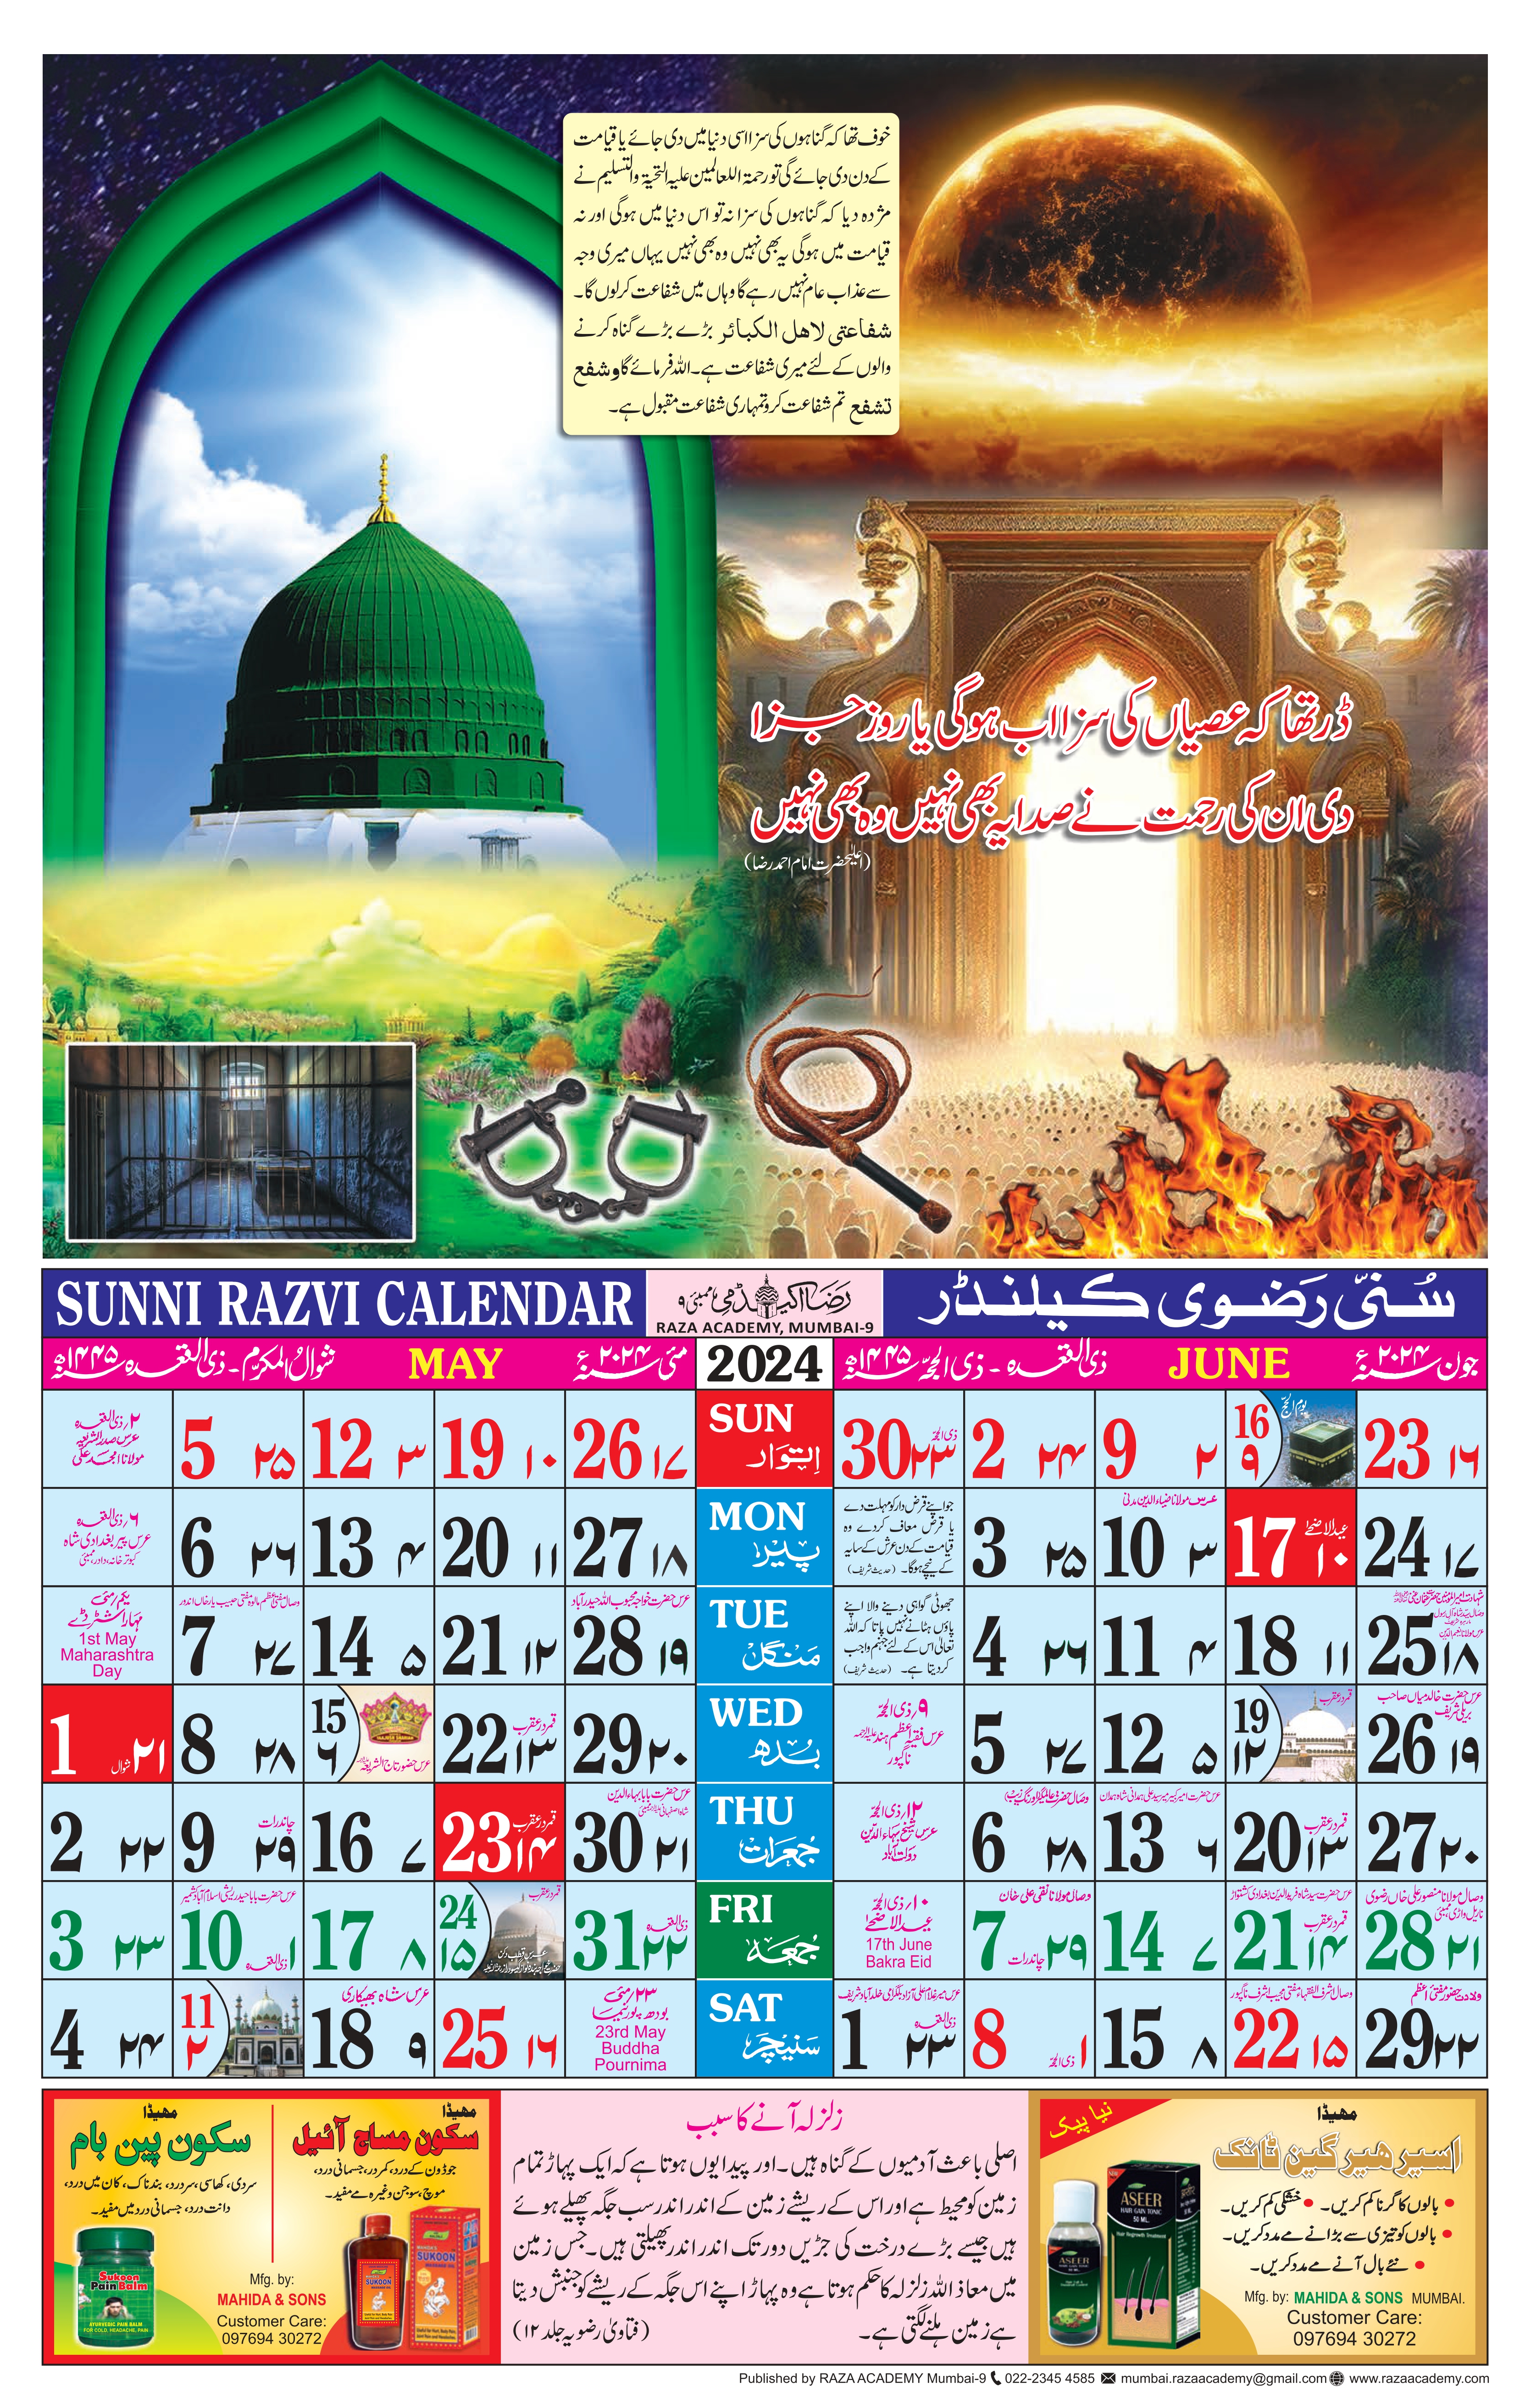 Sunni Razvi Calendar 2024_page-0003